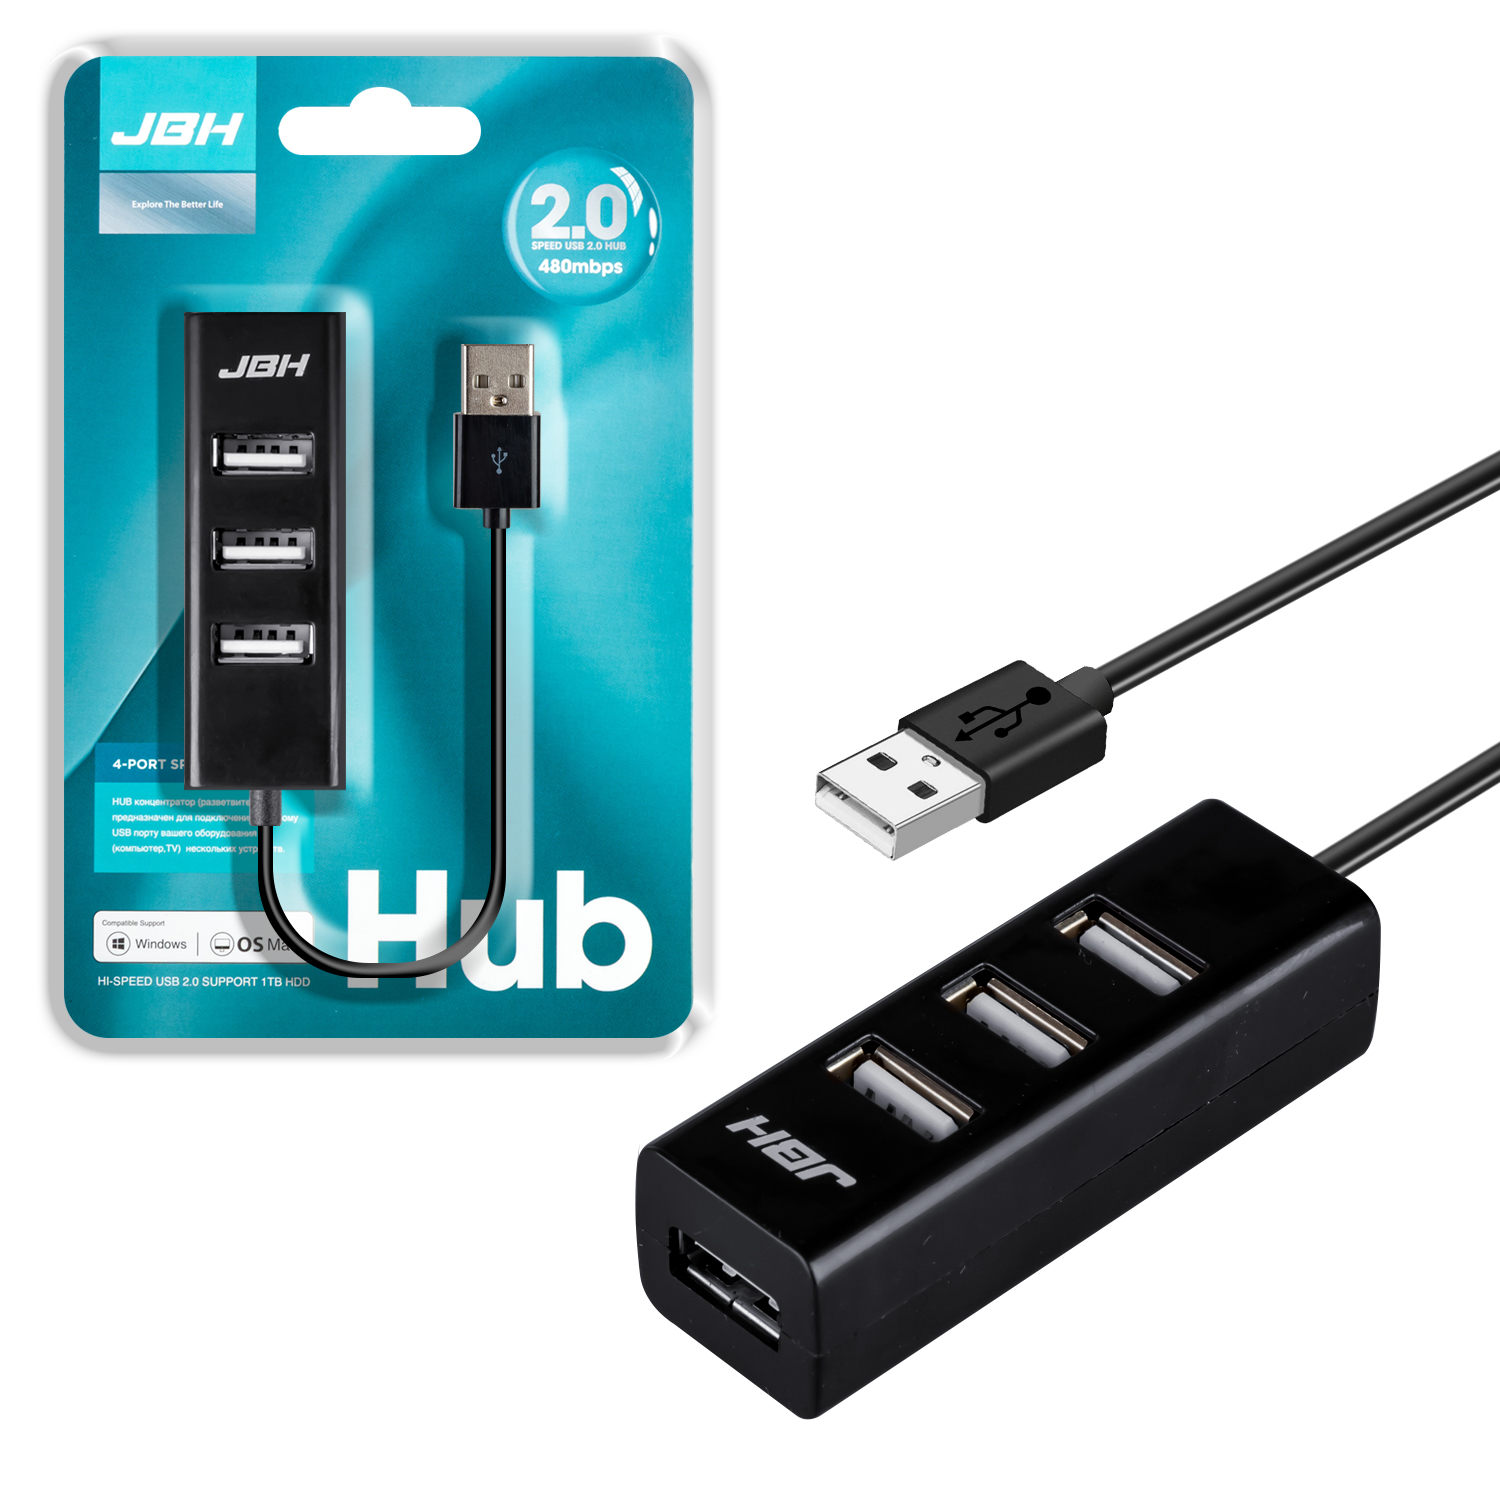 HUB USB на 4 USB 1.1  HUB-112 JBH черный